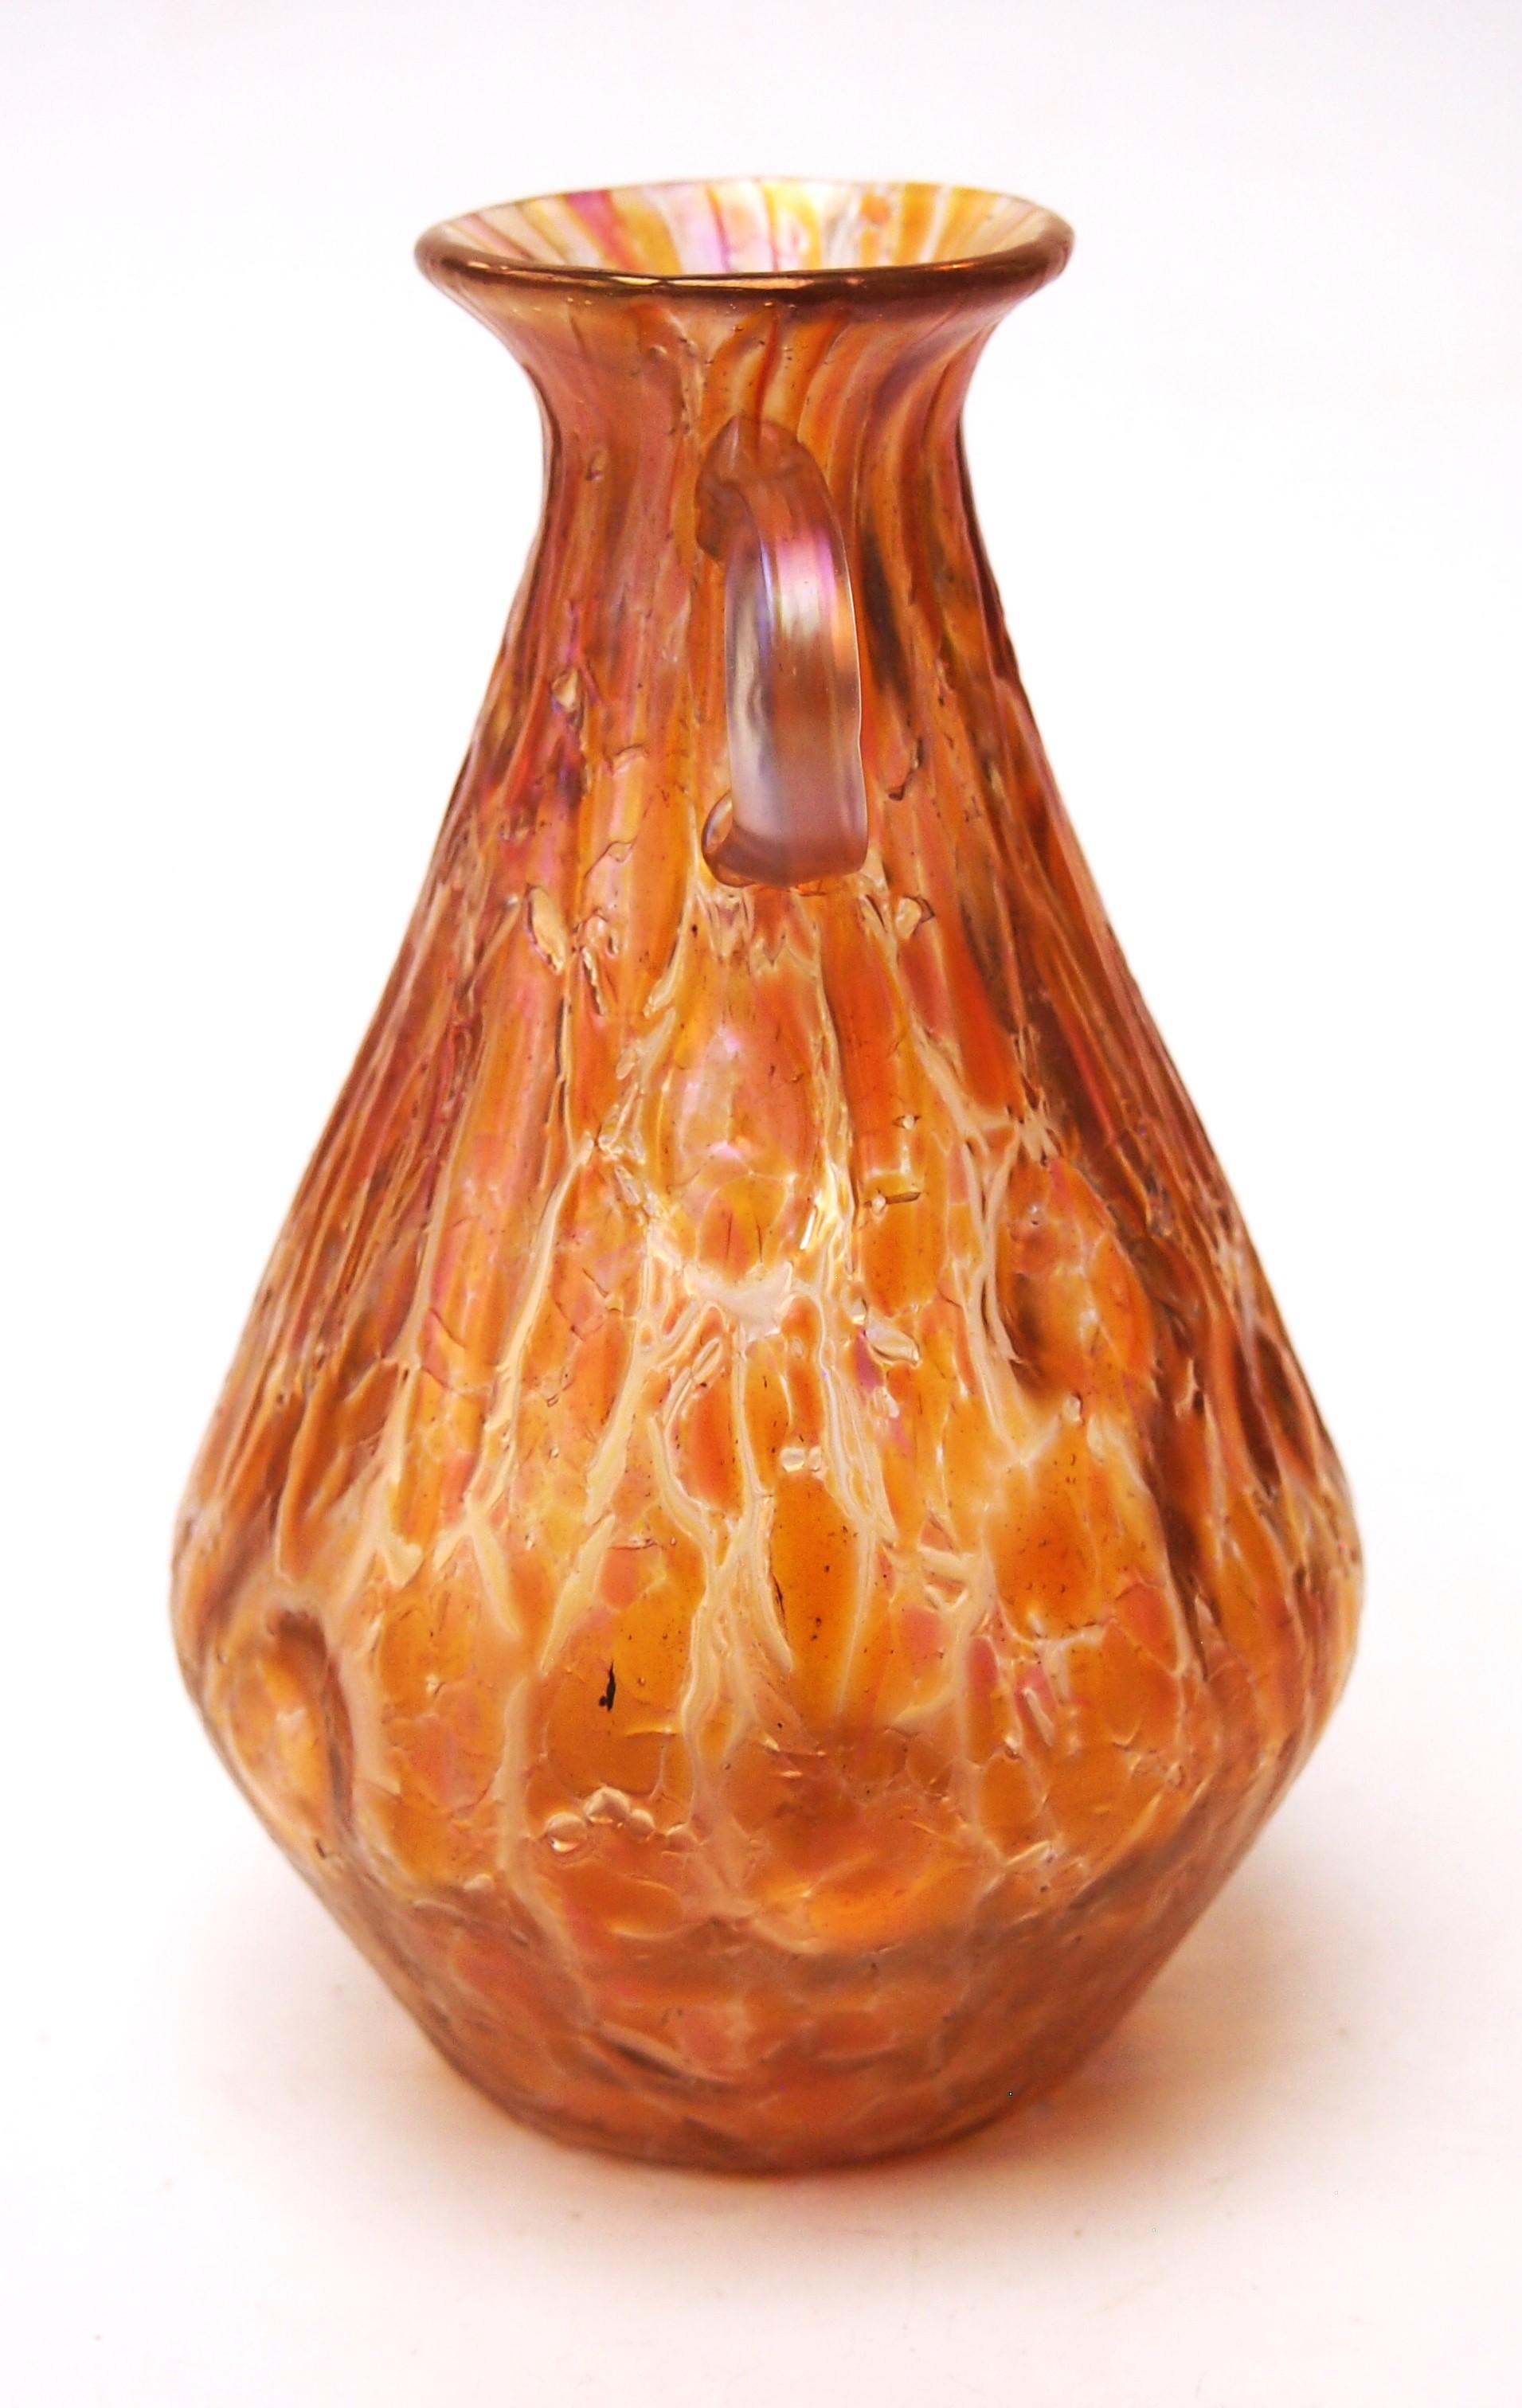 Vase inhabituel à deux anses de couleur orange de Loetz dans le motif documenté appelé Astglas. Cette version du motif Astglas présente une surface recouverte d'une craquelure orange de verre concassé densément fusionné et parfois ornée